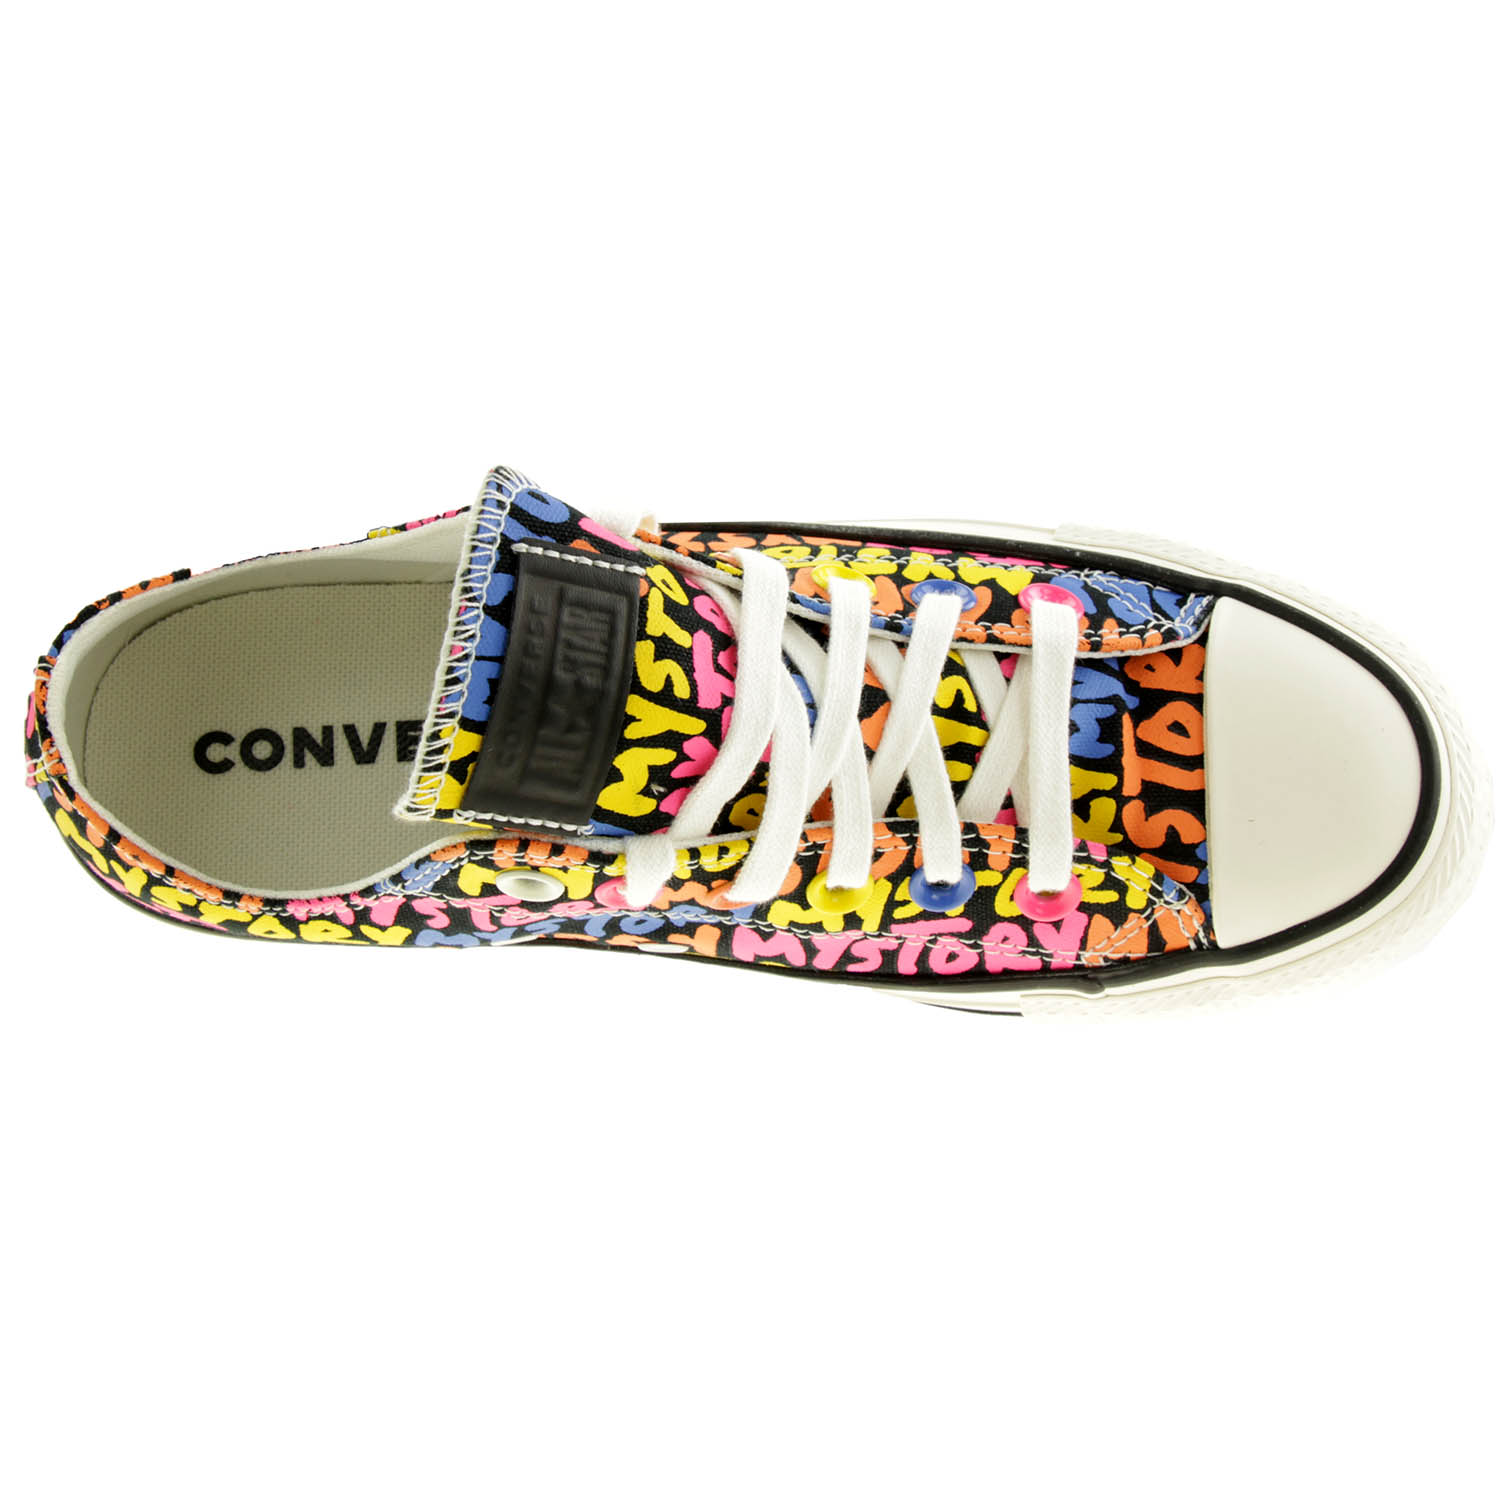 Converse Damen CTAS OX Low-Top Sneaker 570487C Bunt 